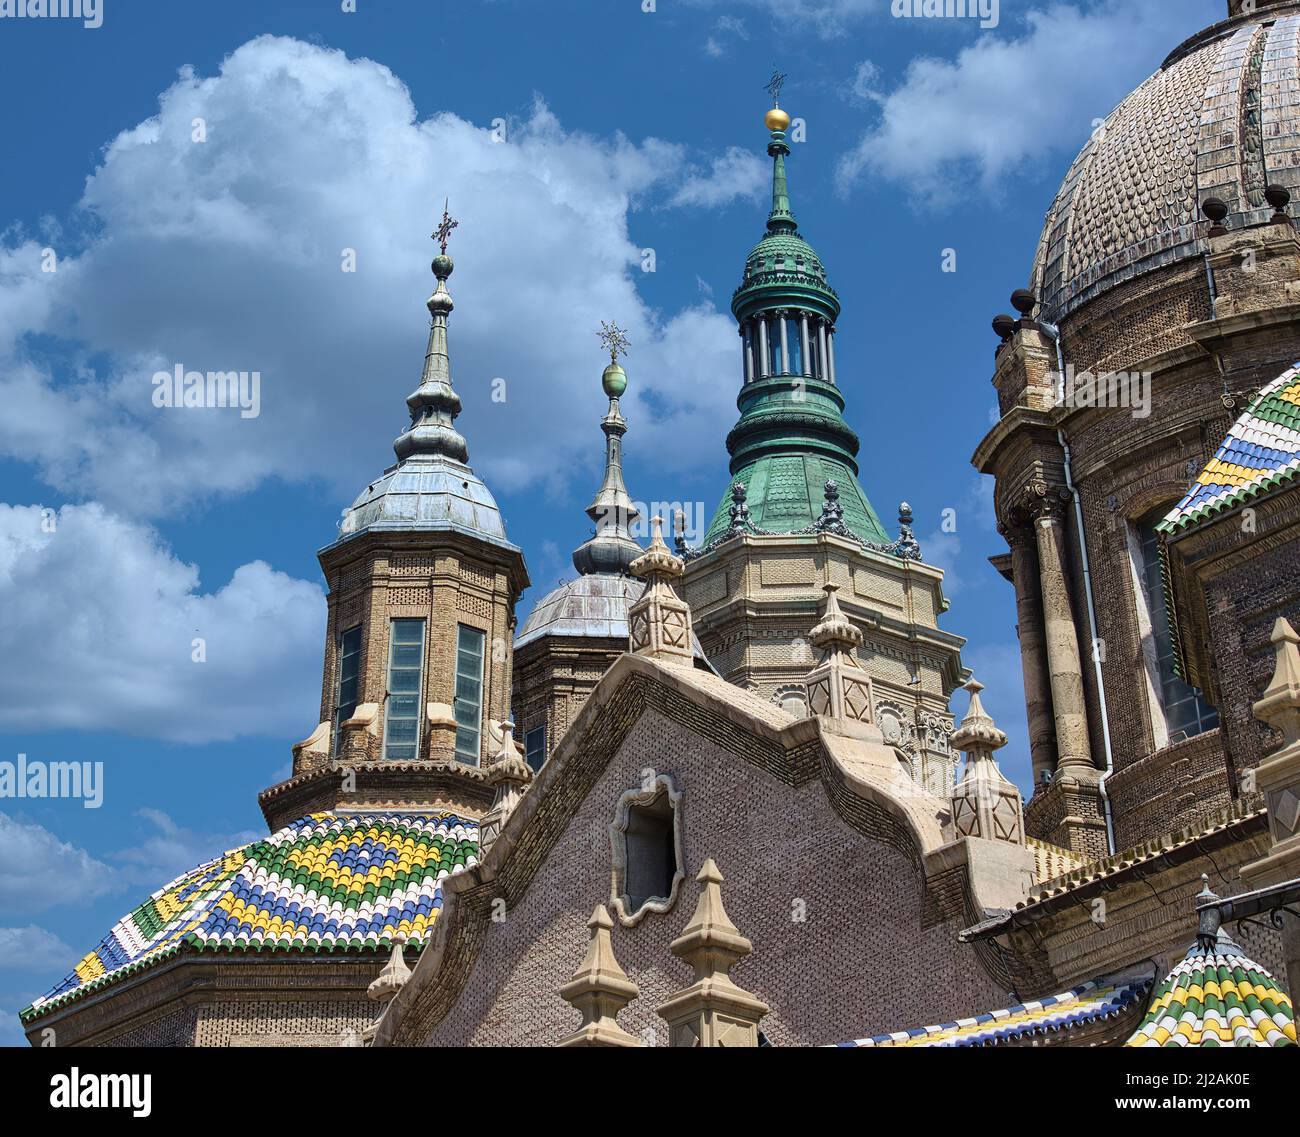 Dettagli architettonici della famosa Basilica di Nuestra Señora del Pilar, (Basilica Cattedrale di nostra Signora del pilastro) Saragozza, Spagna, Aragona Foto Stock